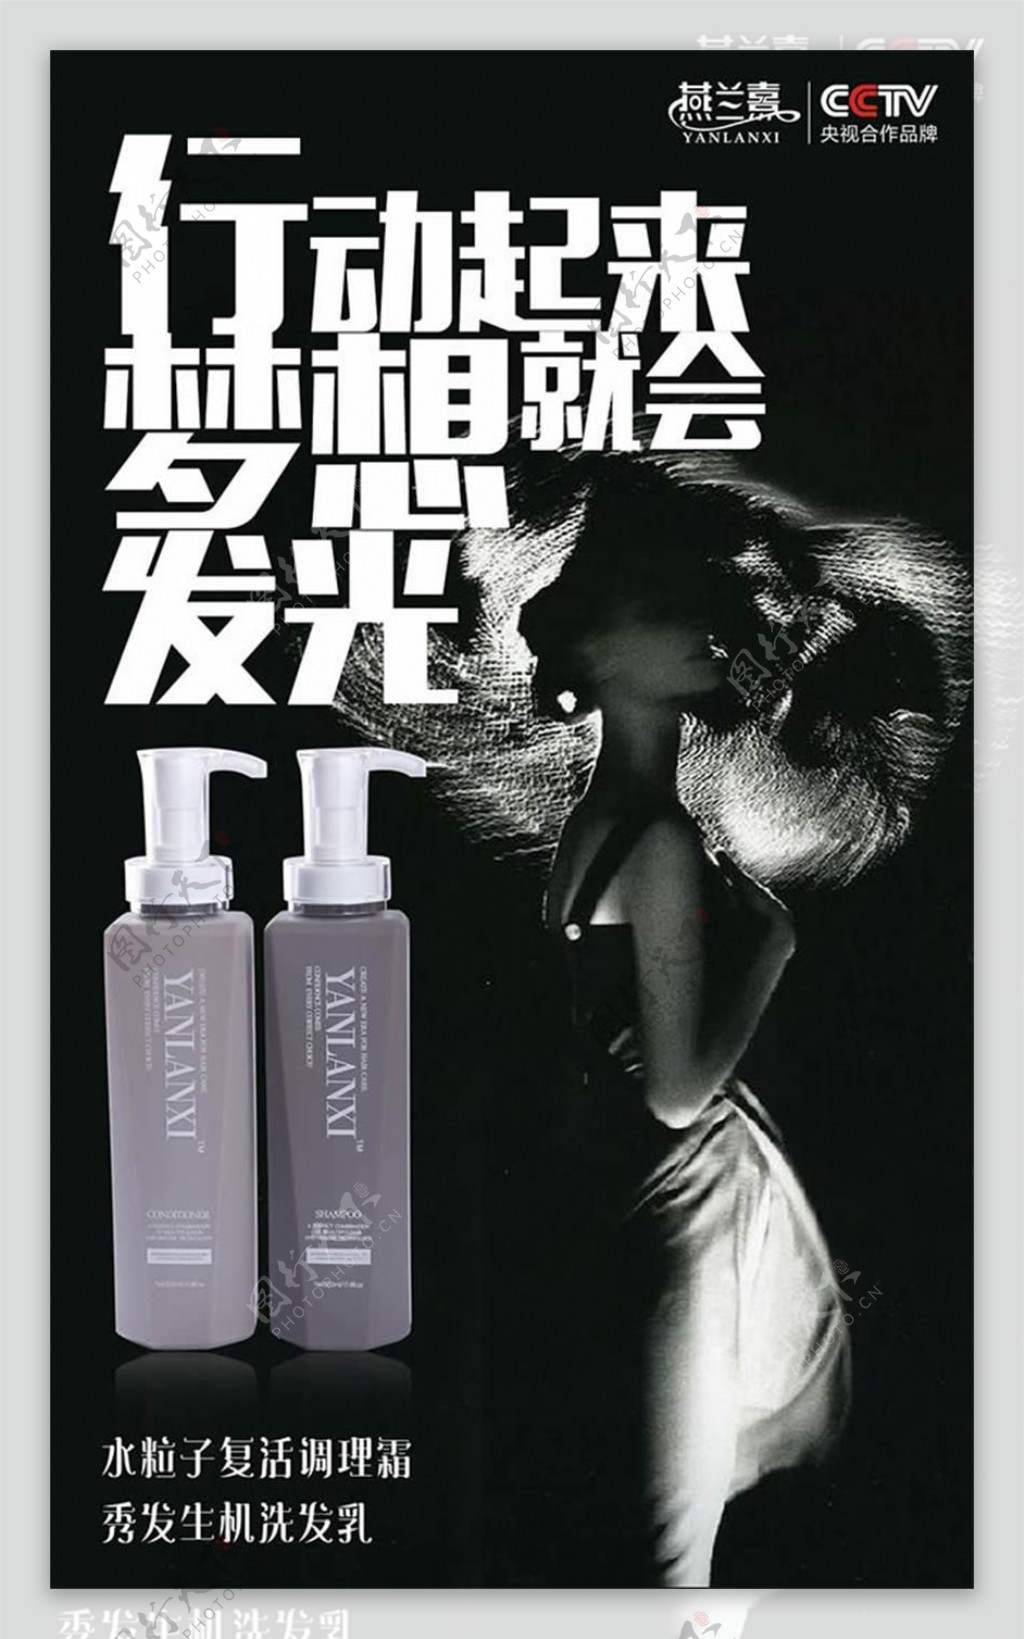 燕兰熹洗发水宣传广告设计psd素材